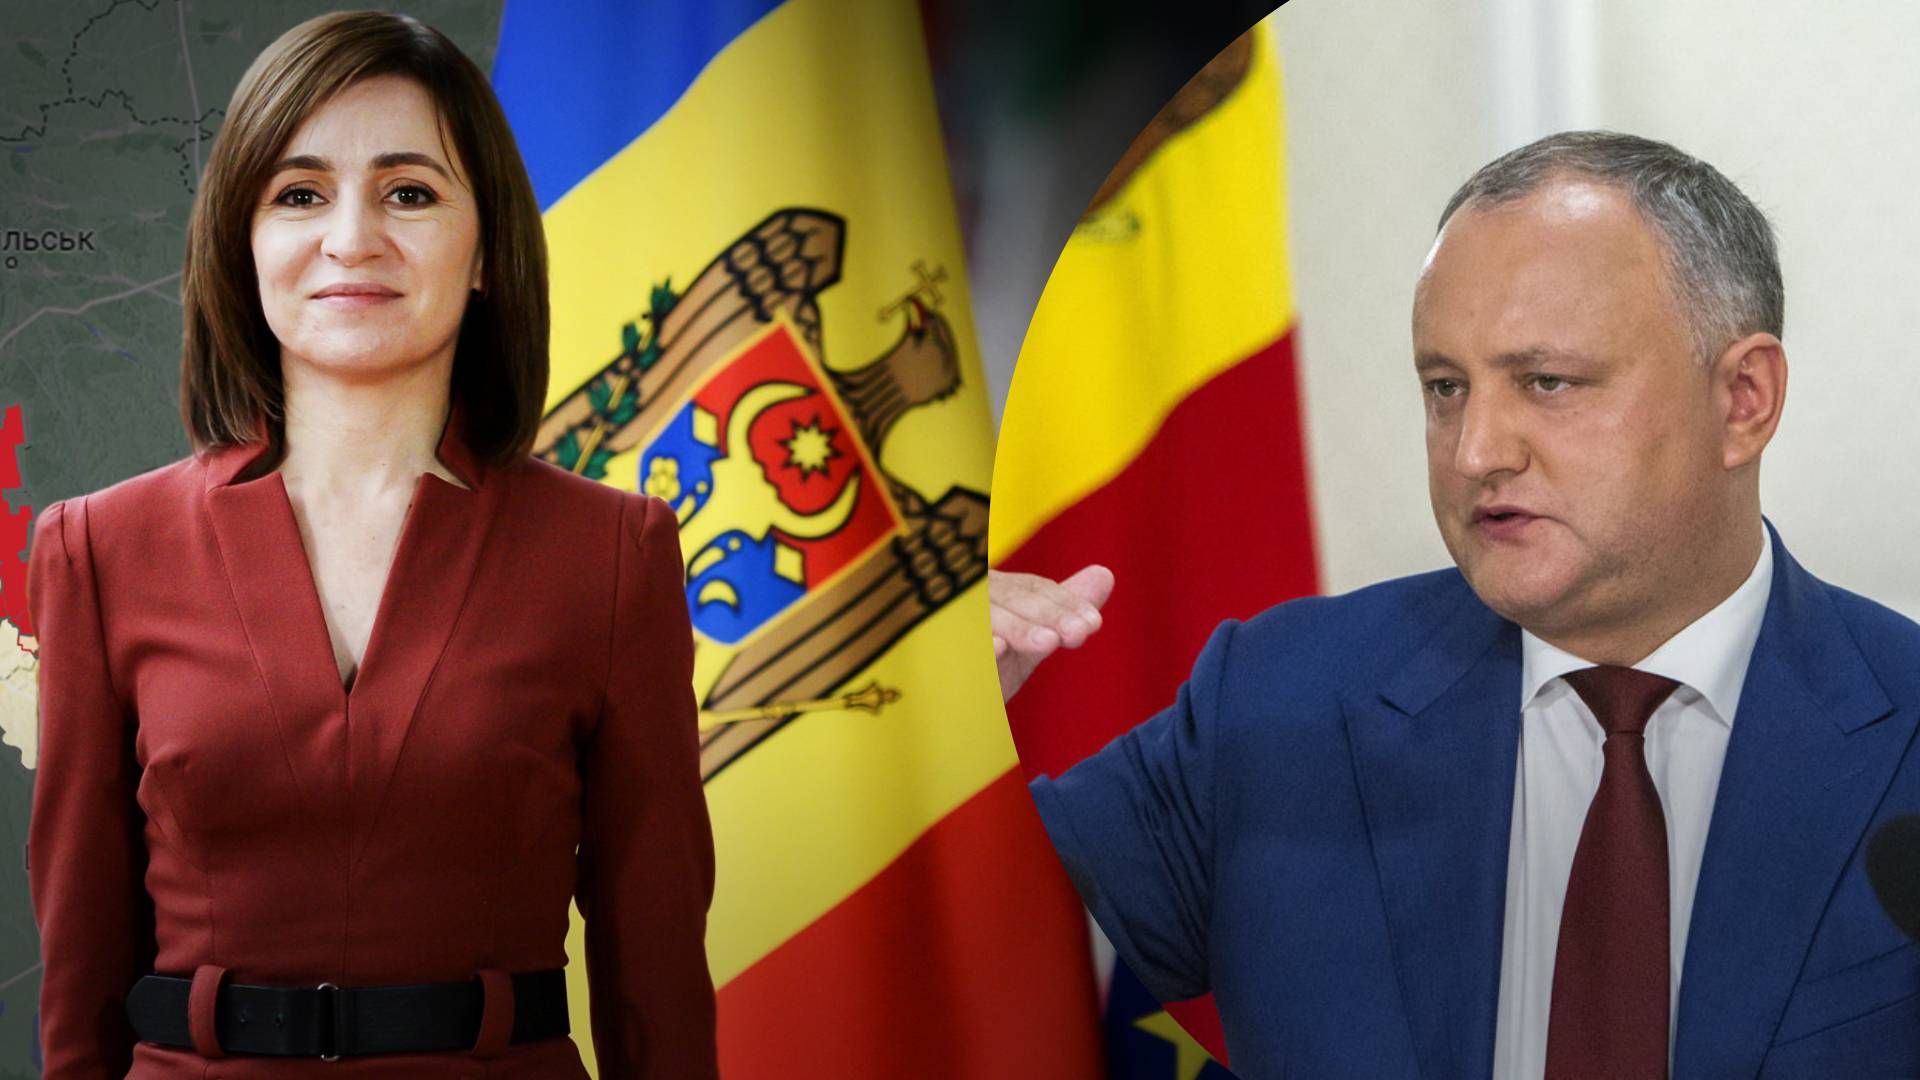 Росія хоче повалити владу Молдови - як реагують у Кишиневі